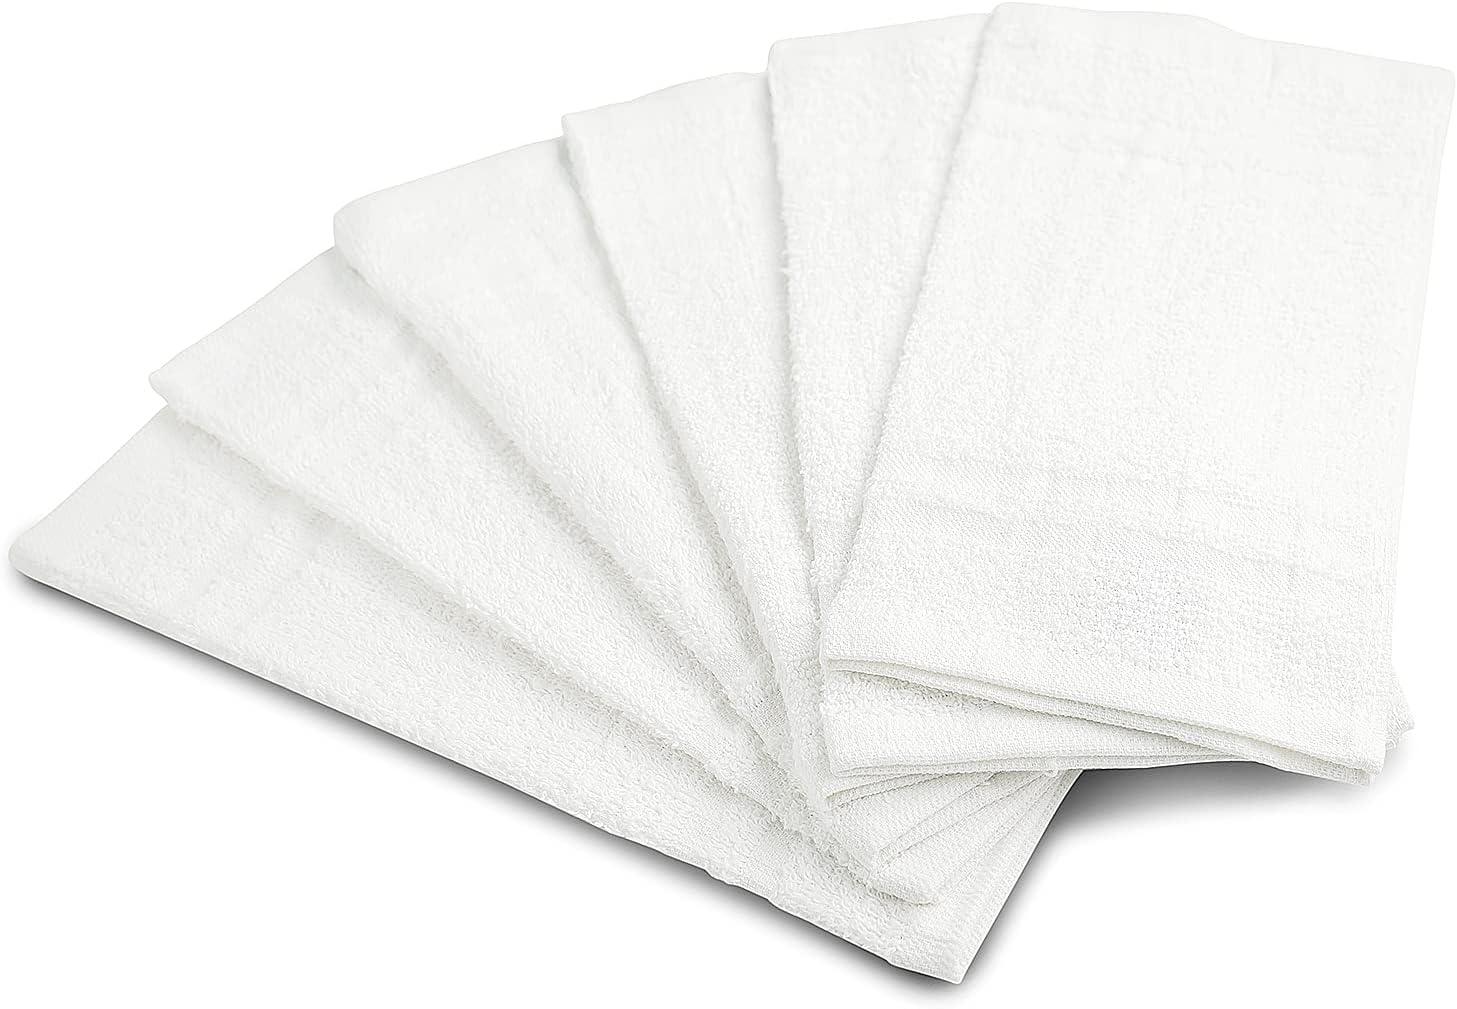 Superior EF-BATH BR Eco-Friendly 100 Percent Ringspun Cotton Bath Towel Set  - Brown, 4 Pieces